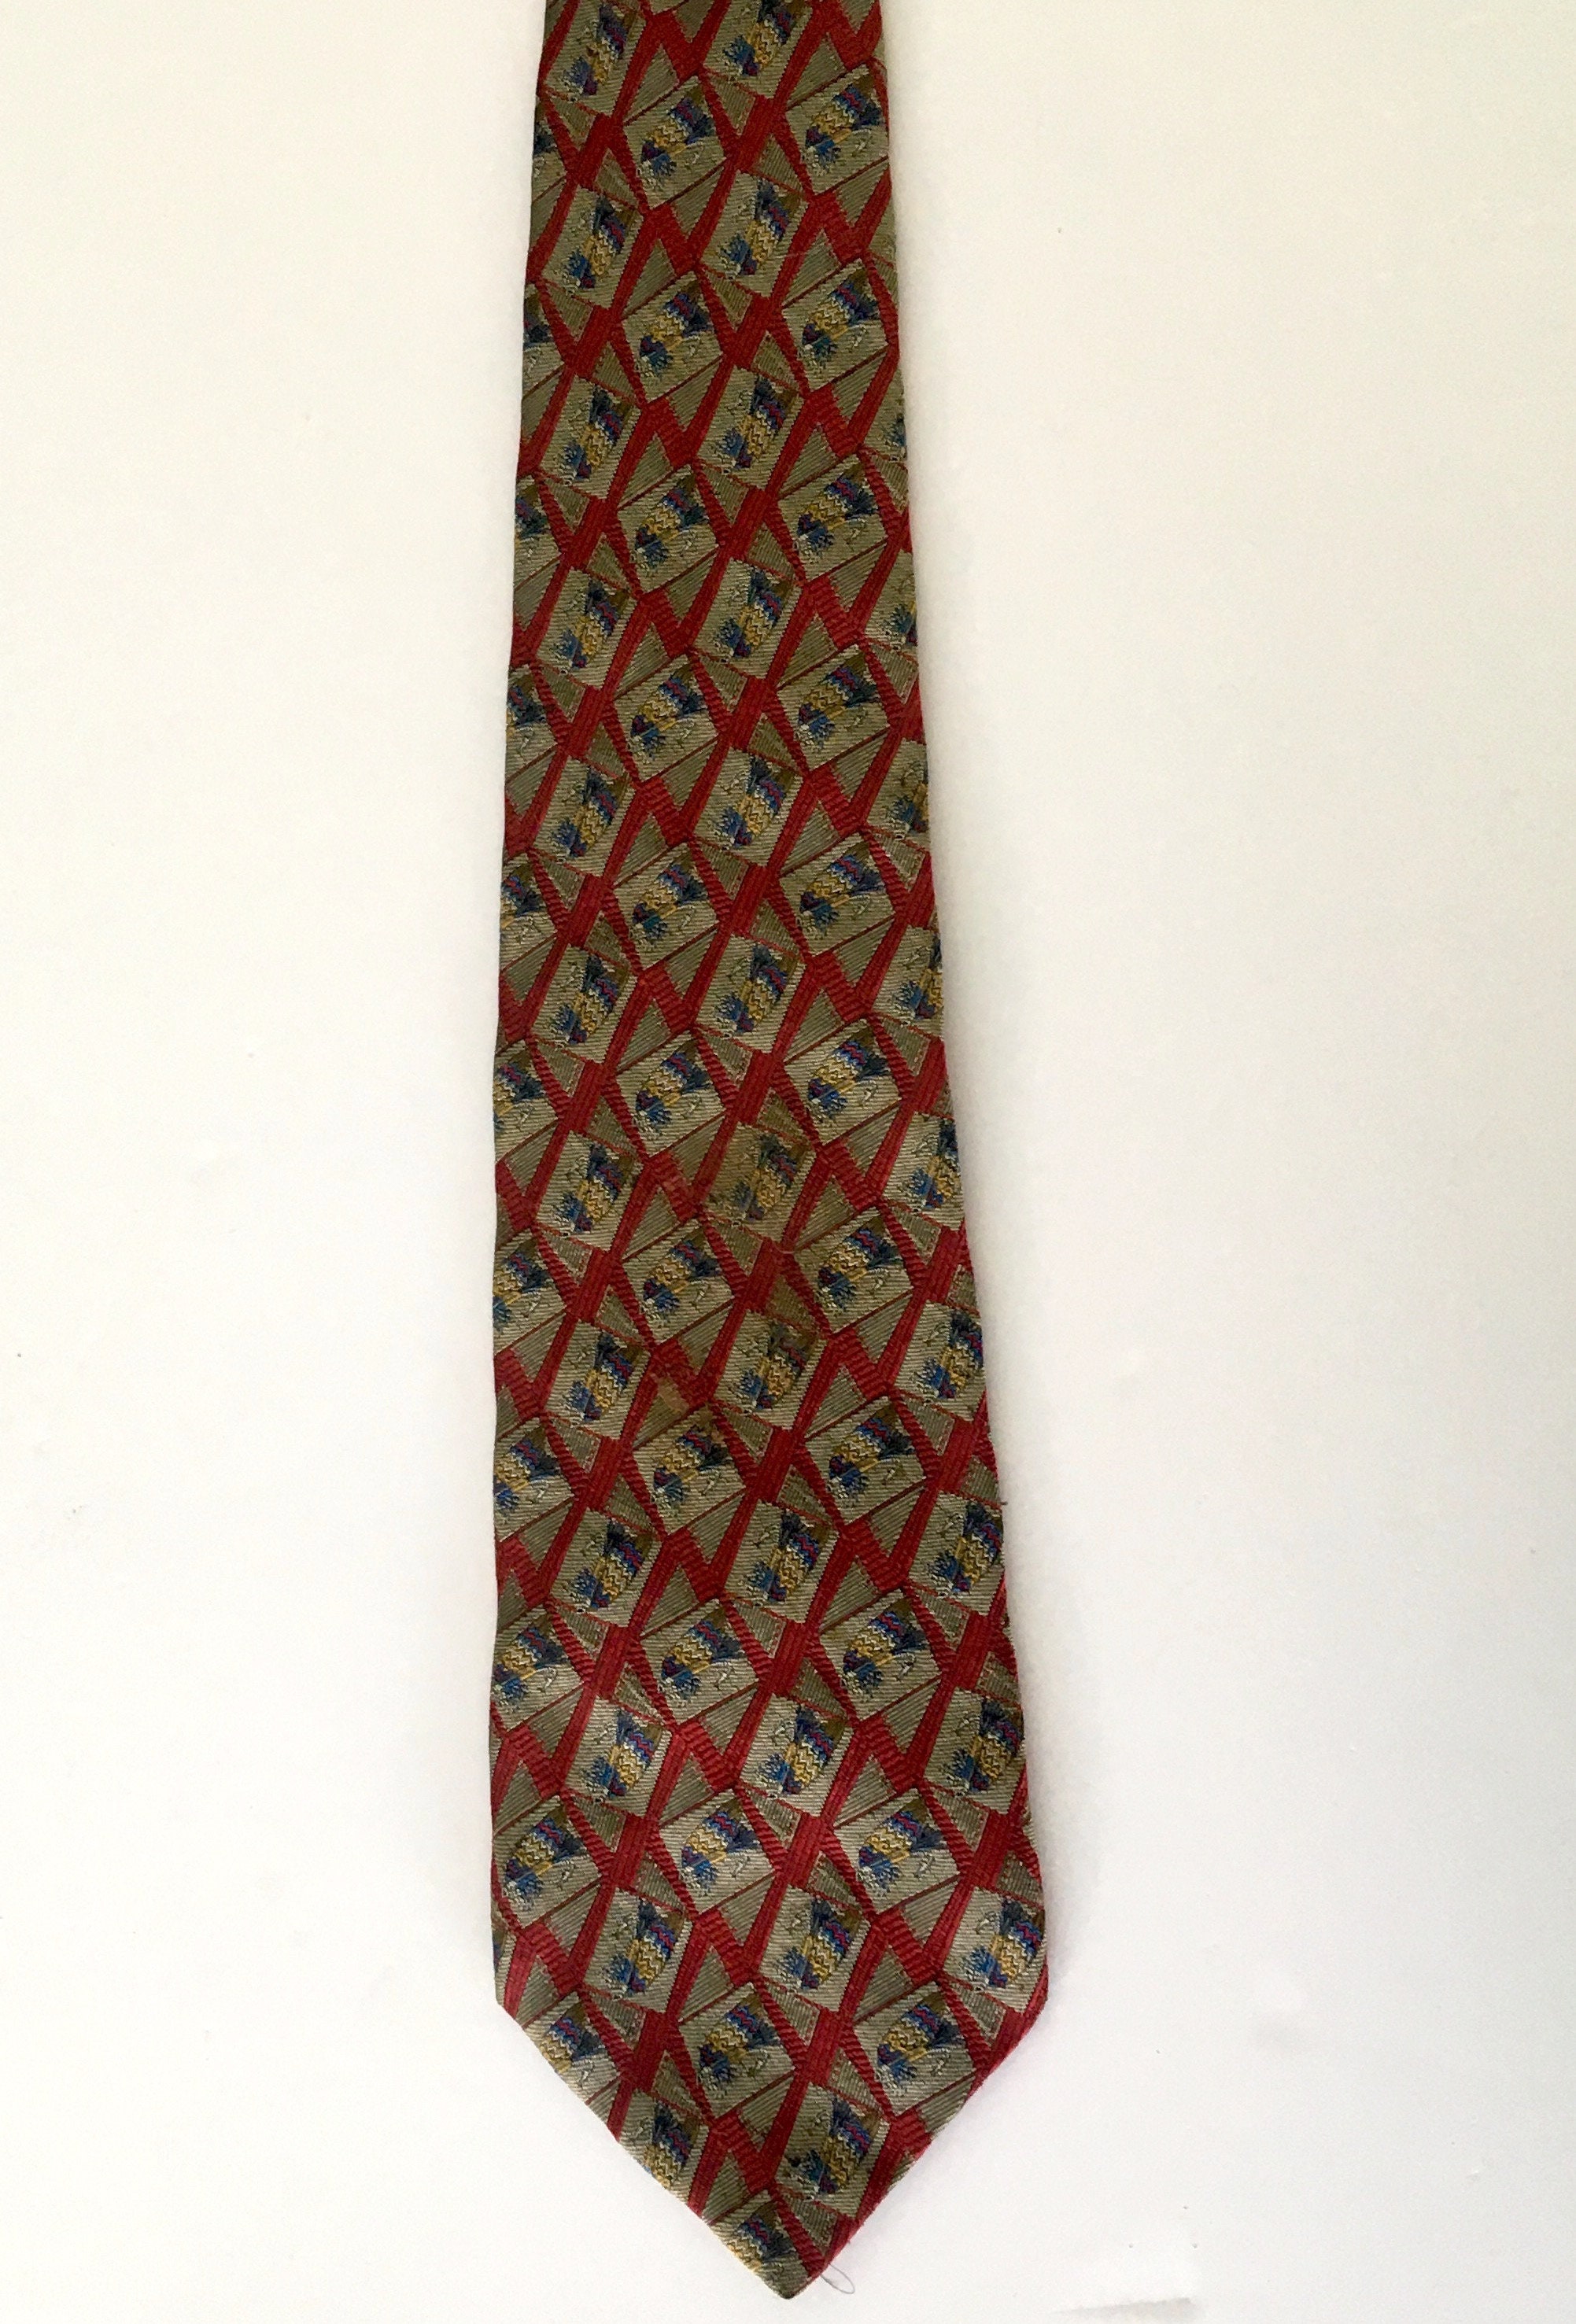 Buy Robert Talbott Tie: Men's Designer Tie Best Men's Online in India ...